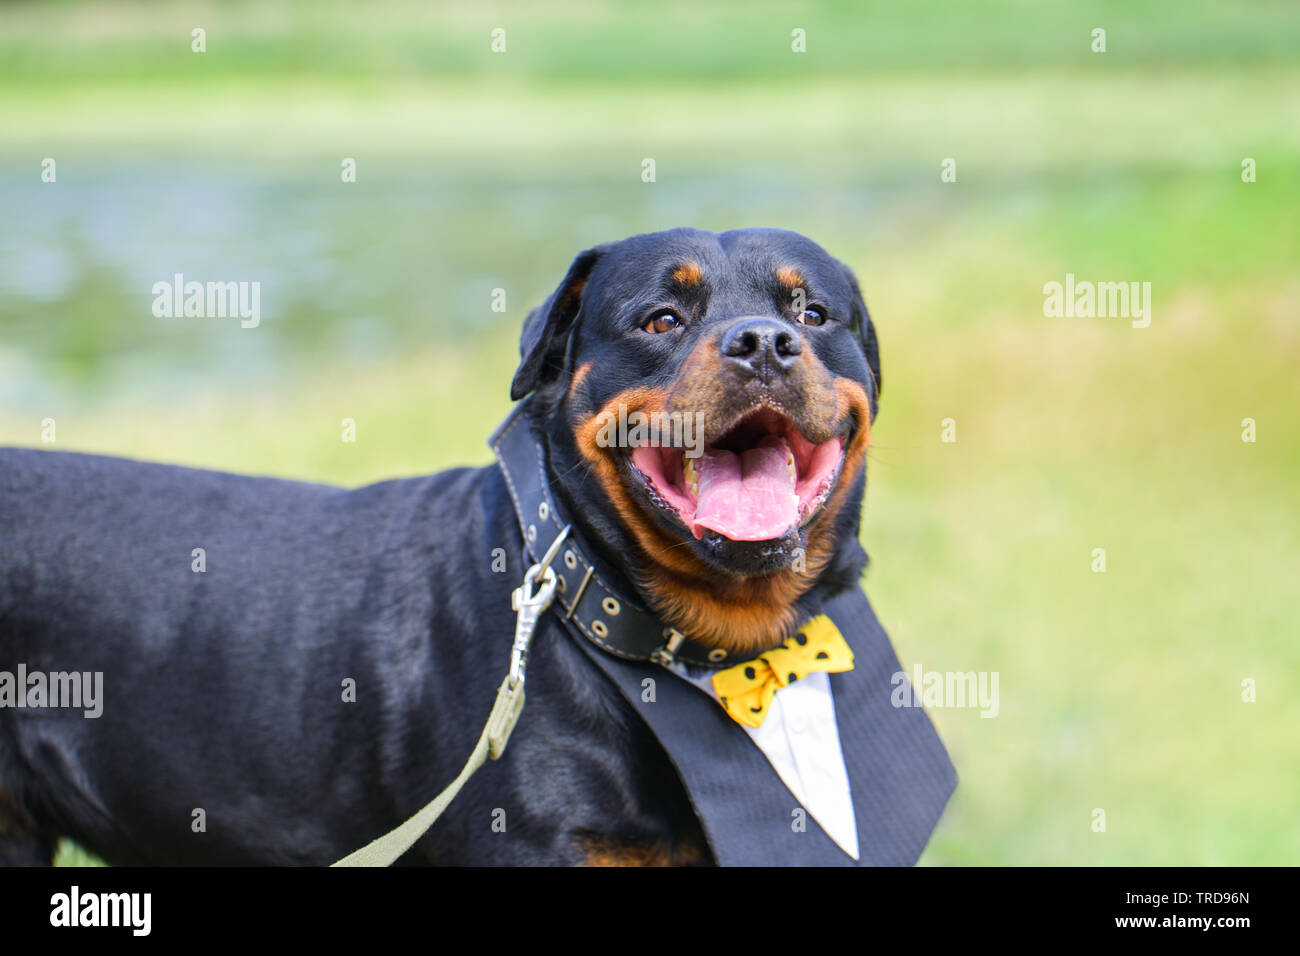 Lustig hund Rottweiler mit einem schönen Hemd, Kragen in den Sommer lächelnd auf einem grünen Hintergrund. Auf der Seite gibt es einen Platz für die Beschriftung, copyspa Stockfoto